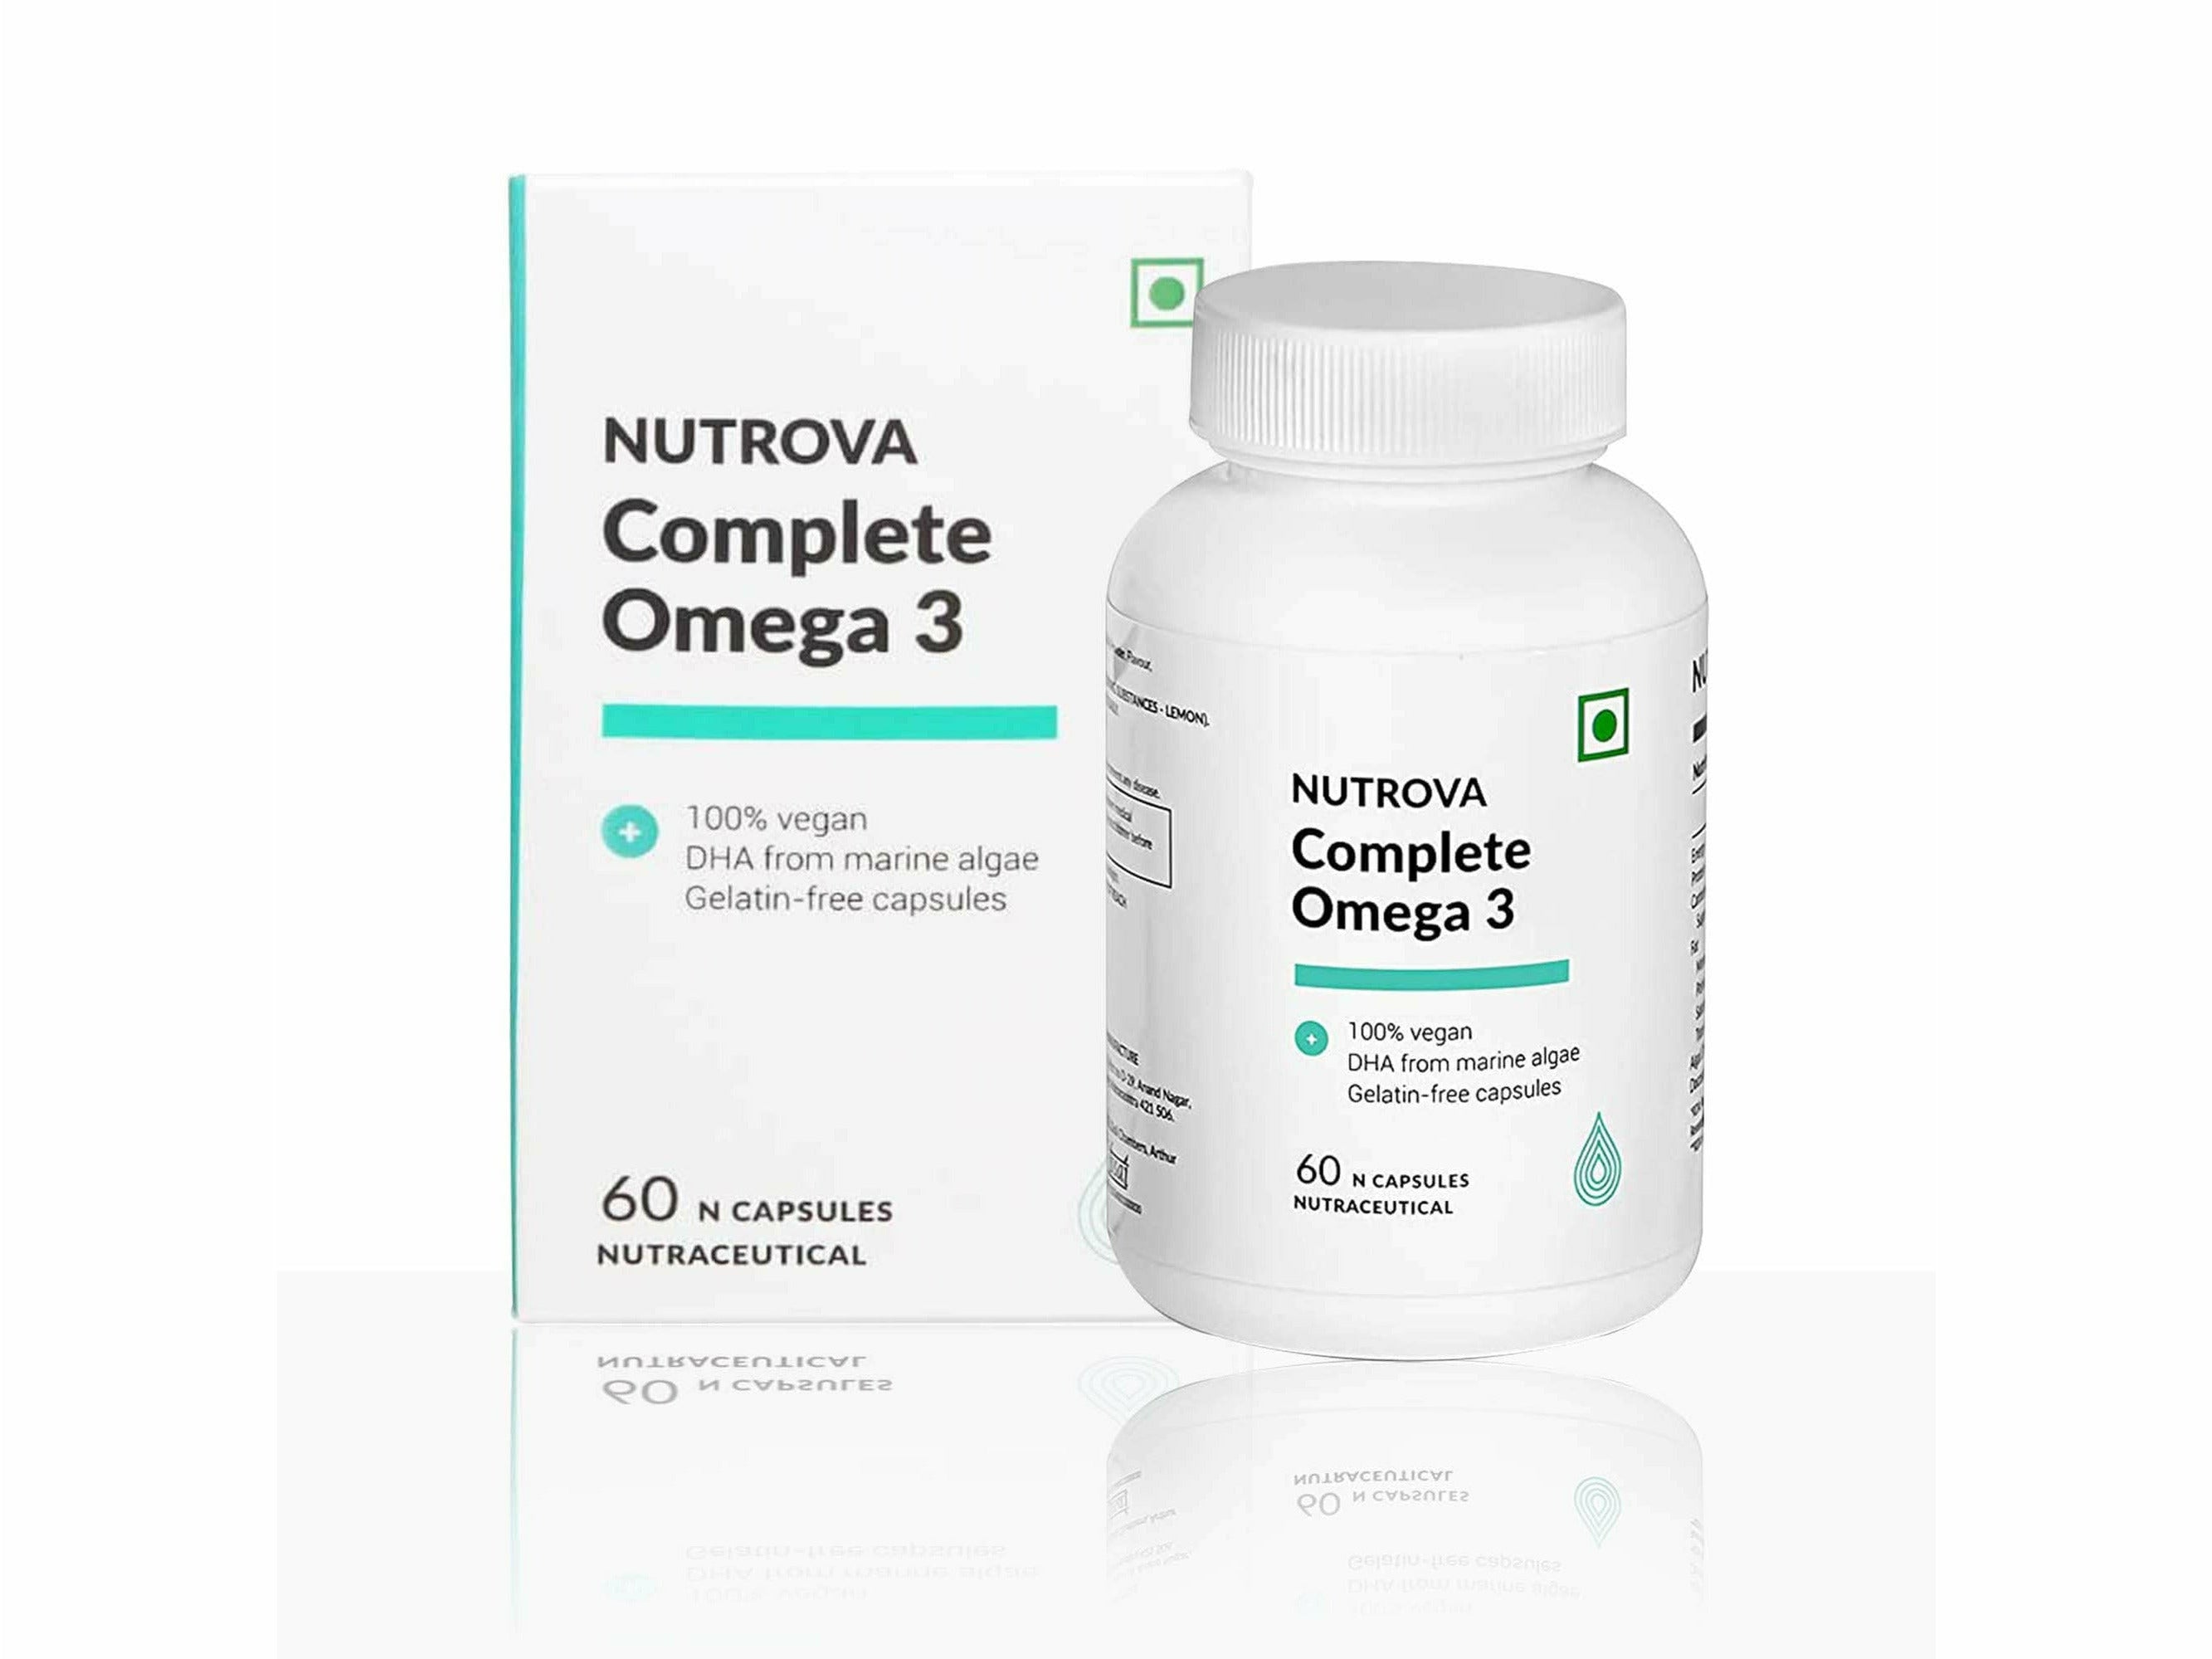 Nutrova Complete Omega 3-Clinikally